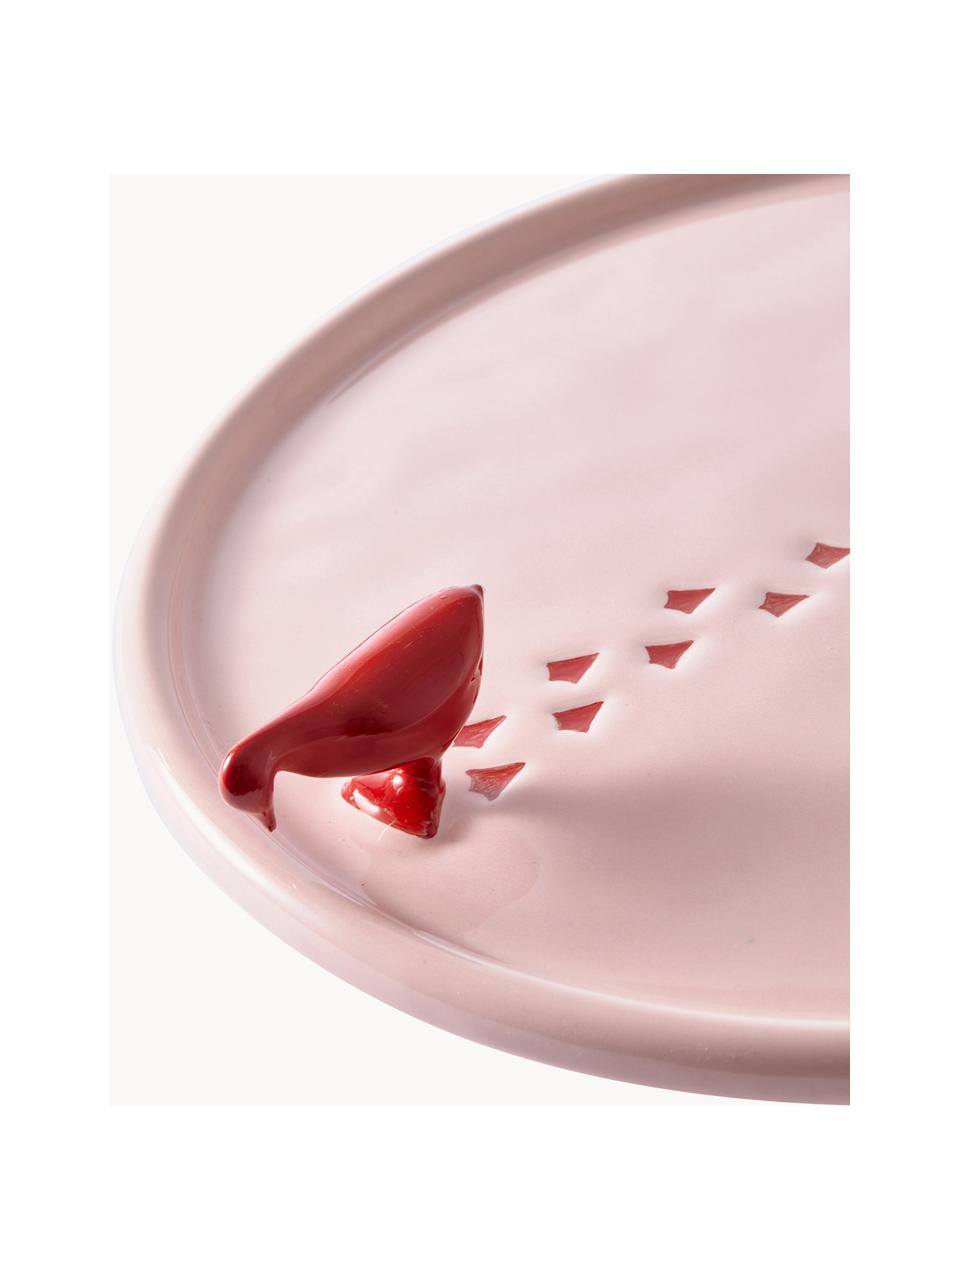 Ručne vyrobený keramický servírovací tanier Walking Duck, Keramika, Svetloružová, červená, Ø 30 cm